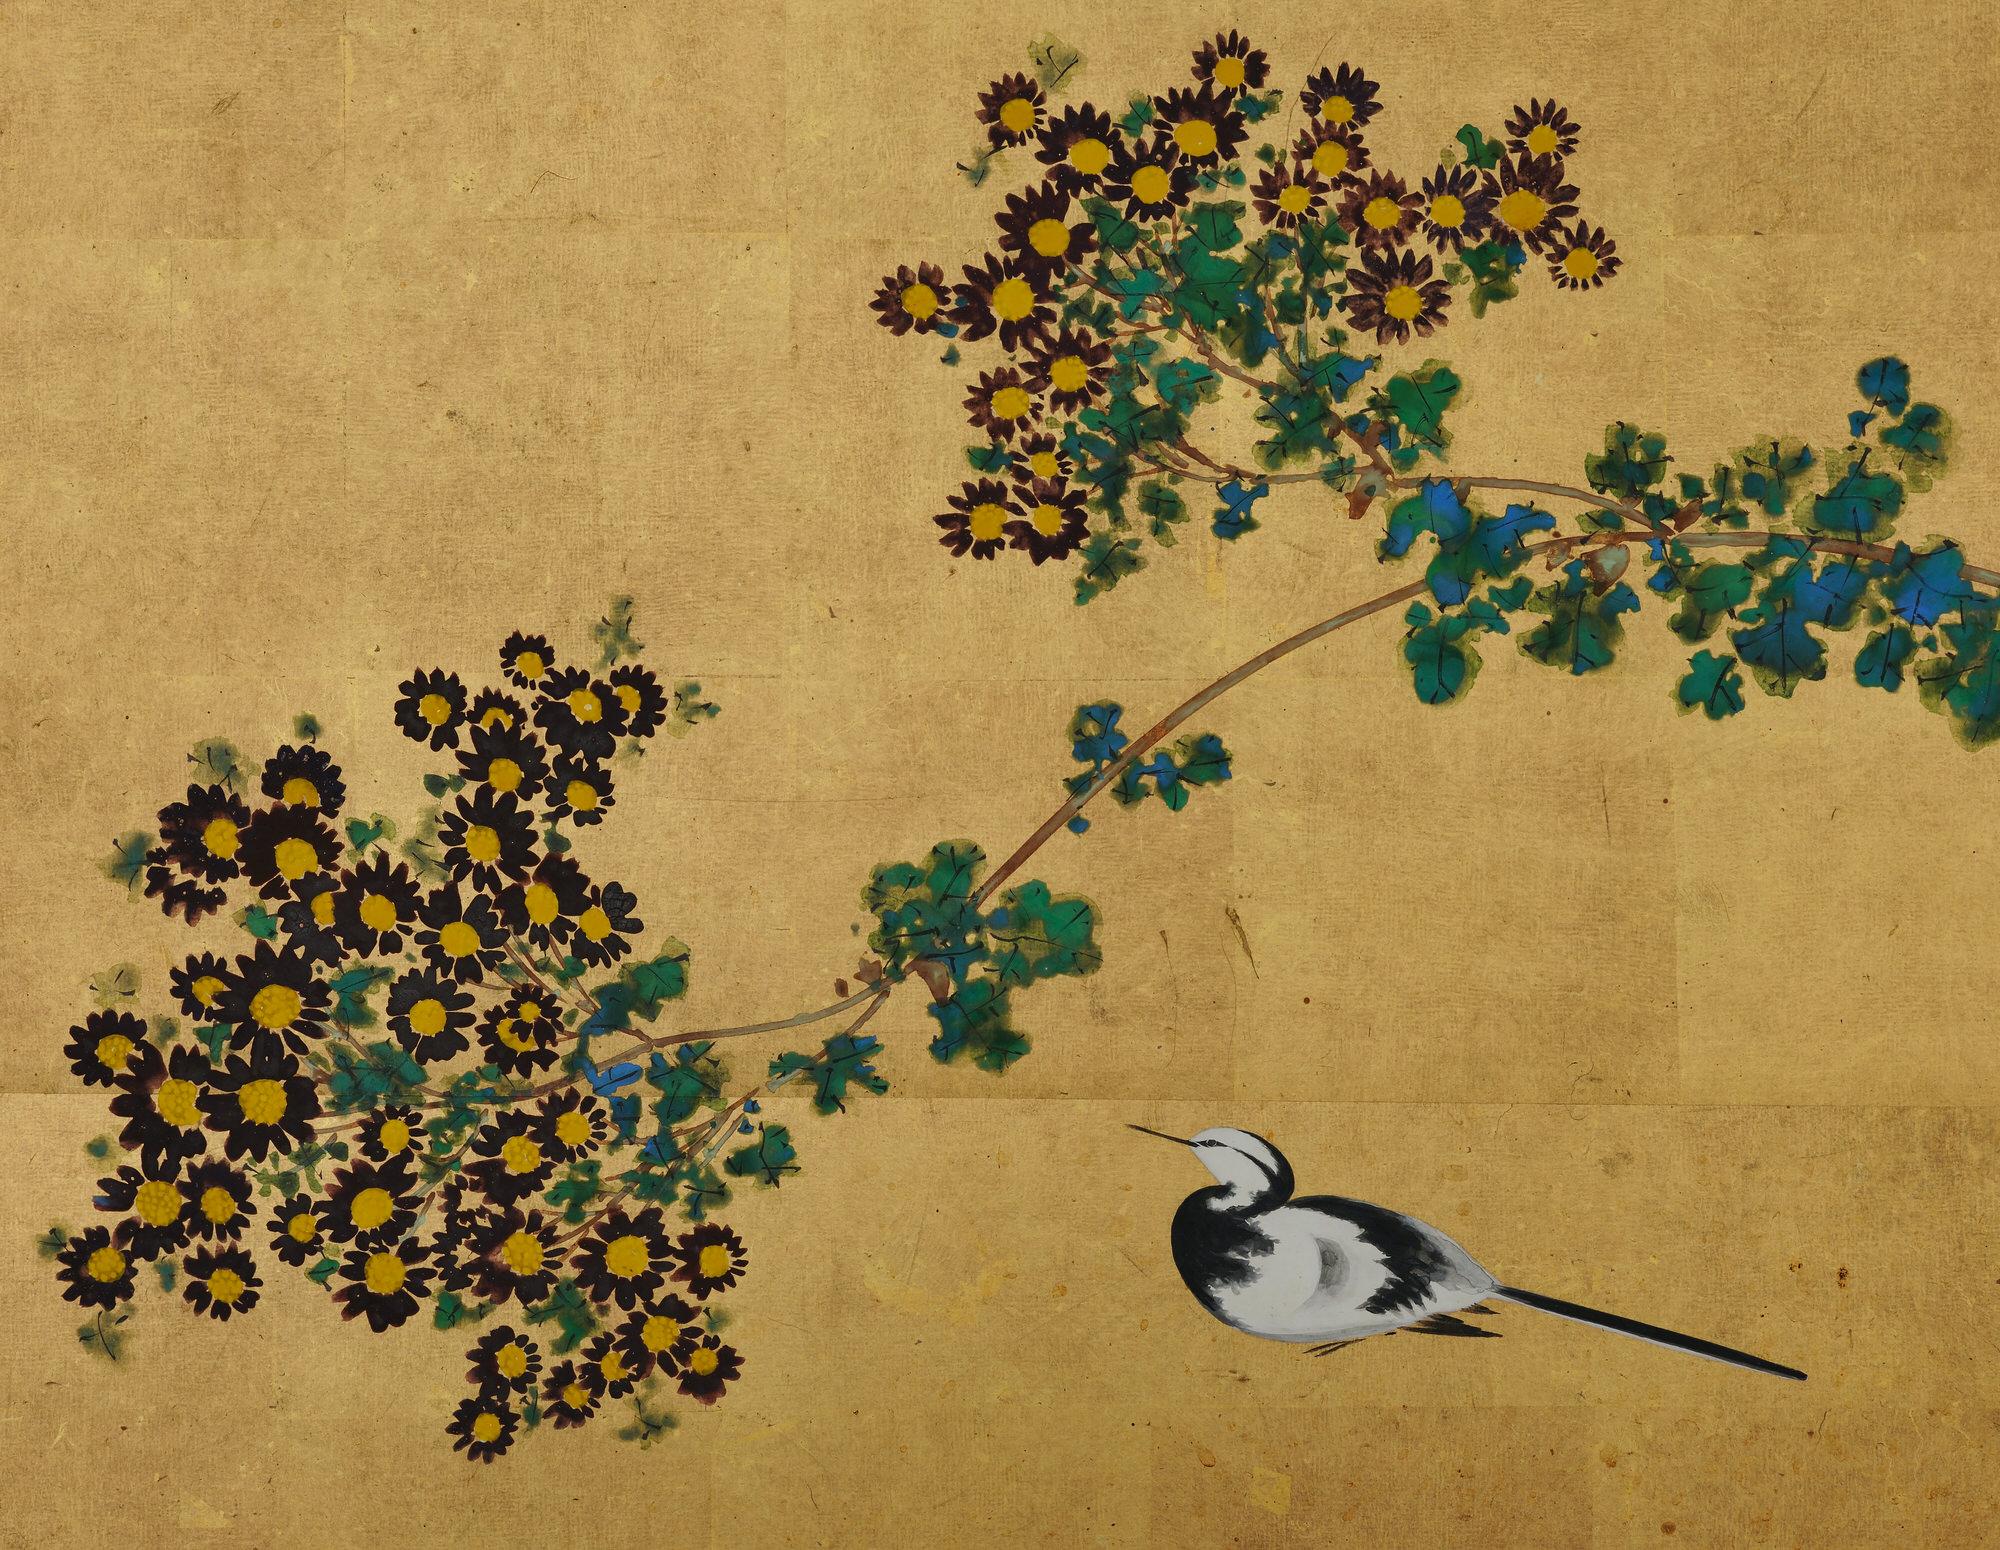 Ishizaki Koyo (1884-1947)

Bergeronnette et chrysanthème

Début du 20e siècle

Paravent en deux panneaux. Encre, pigments et gofun sur feuille d'or.

Signe : Koyo

Joint d'étanchéité : Koyo

Ce petit paravent à deux panneaux (furosaki